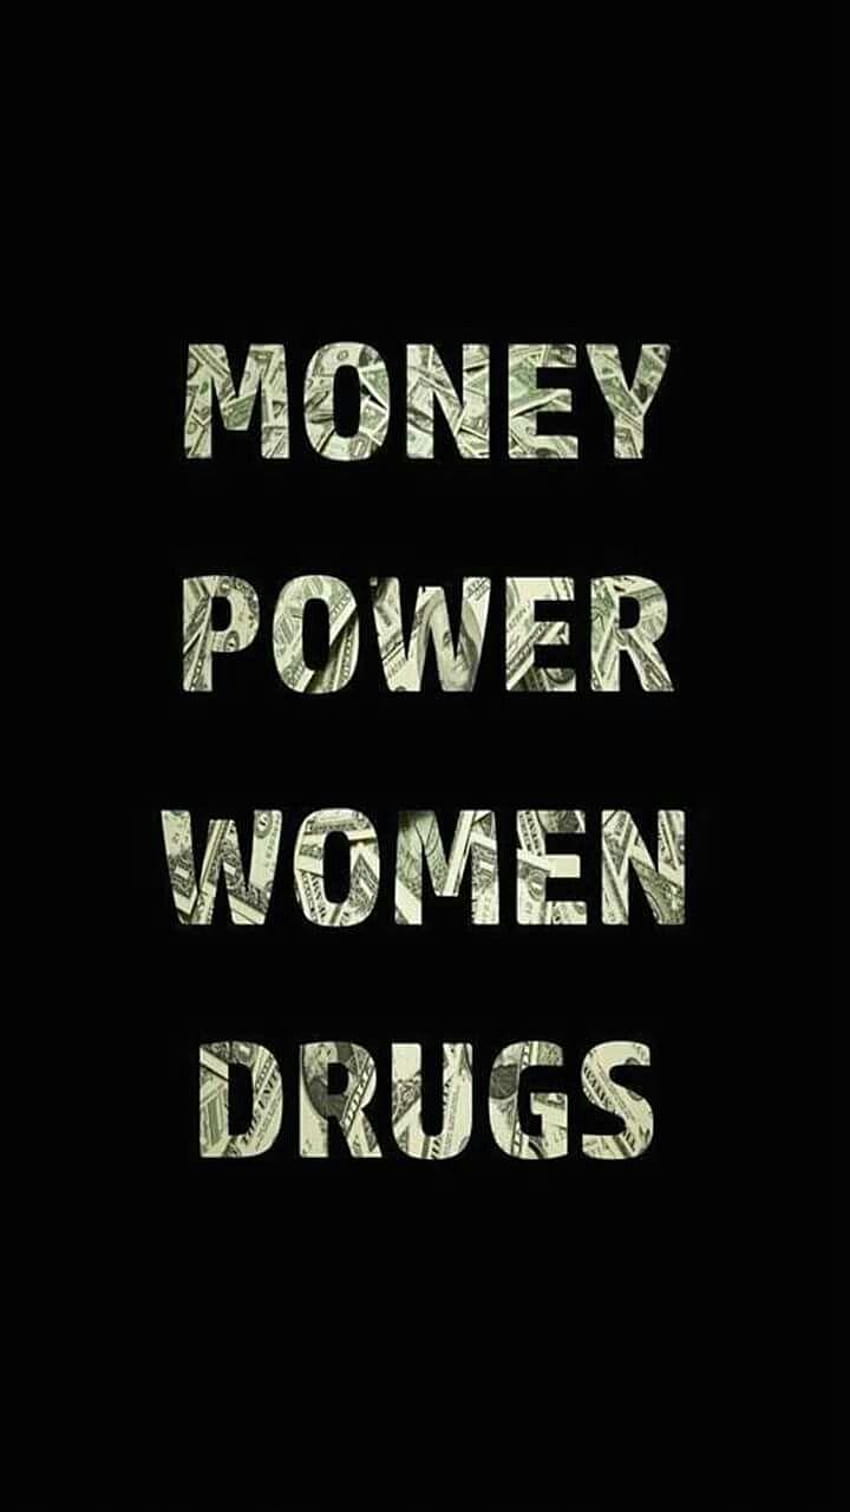 MN on in 2020, money power women drugs HD phone wallpaper